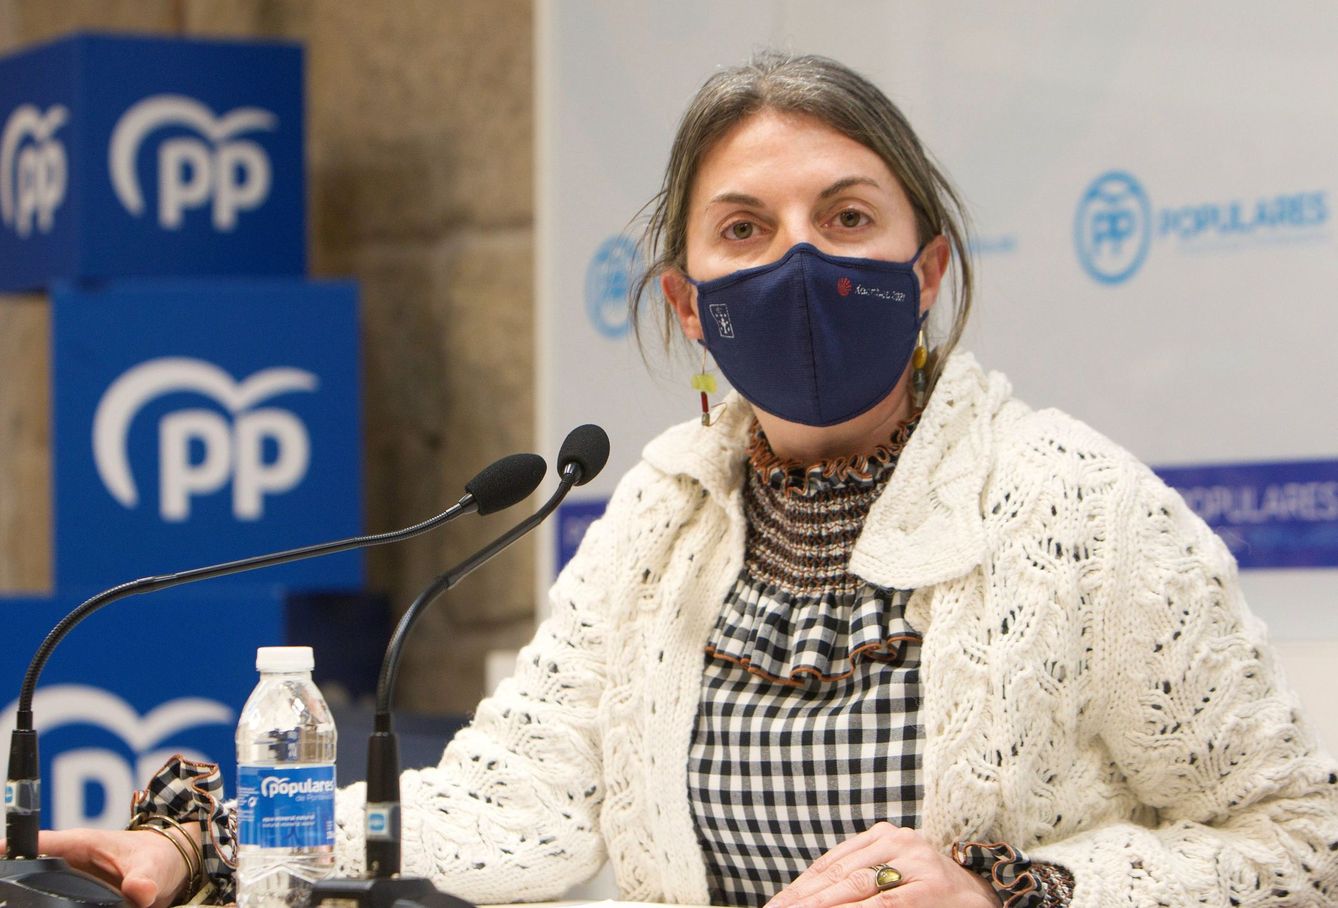  La delegada de la Xunta en Pontevedra, Luisa Piñeiro, durante la rueda de prensa en la que renunció a sus cargos tras la sentencia del TSJG. (Efe)